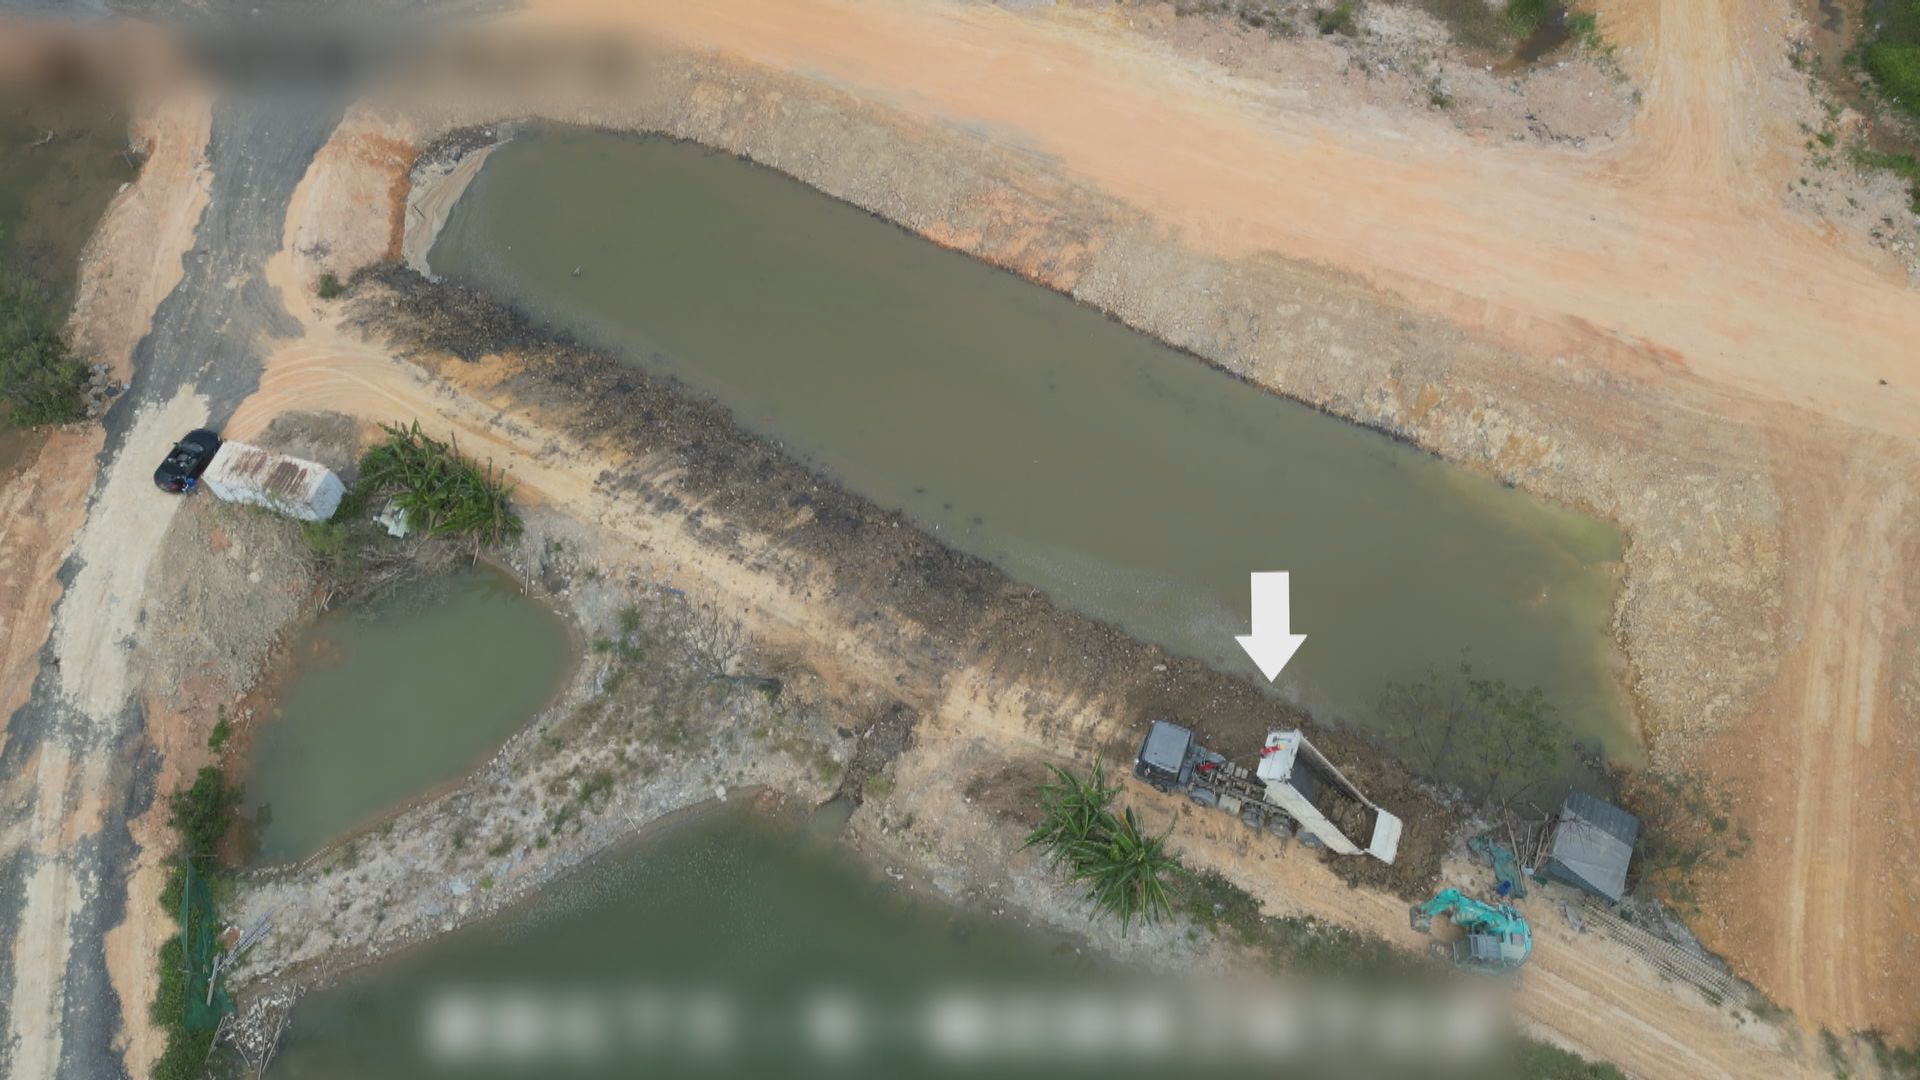 北都發展公布後 環團指至少有78.7公頃濕地遭破壞